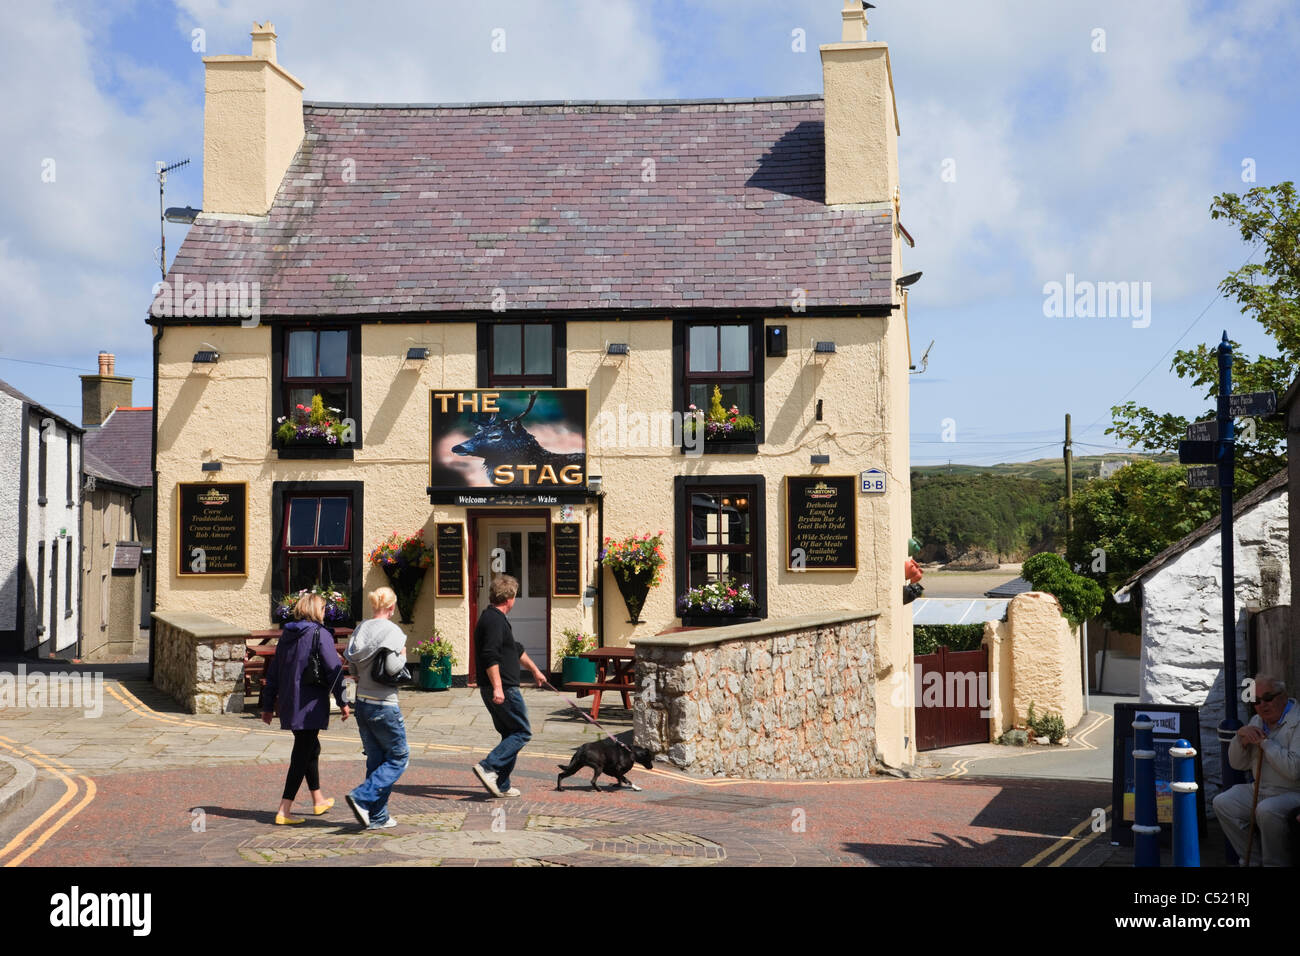 Les gens qui passent le Stag Inn pub plus au nord, au Pays de Galles. Cemaes, Isle of Anglesey, au nord du Pays de Galles, Royaume-Uni, Angleterre. Banque D'Images